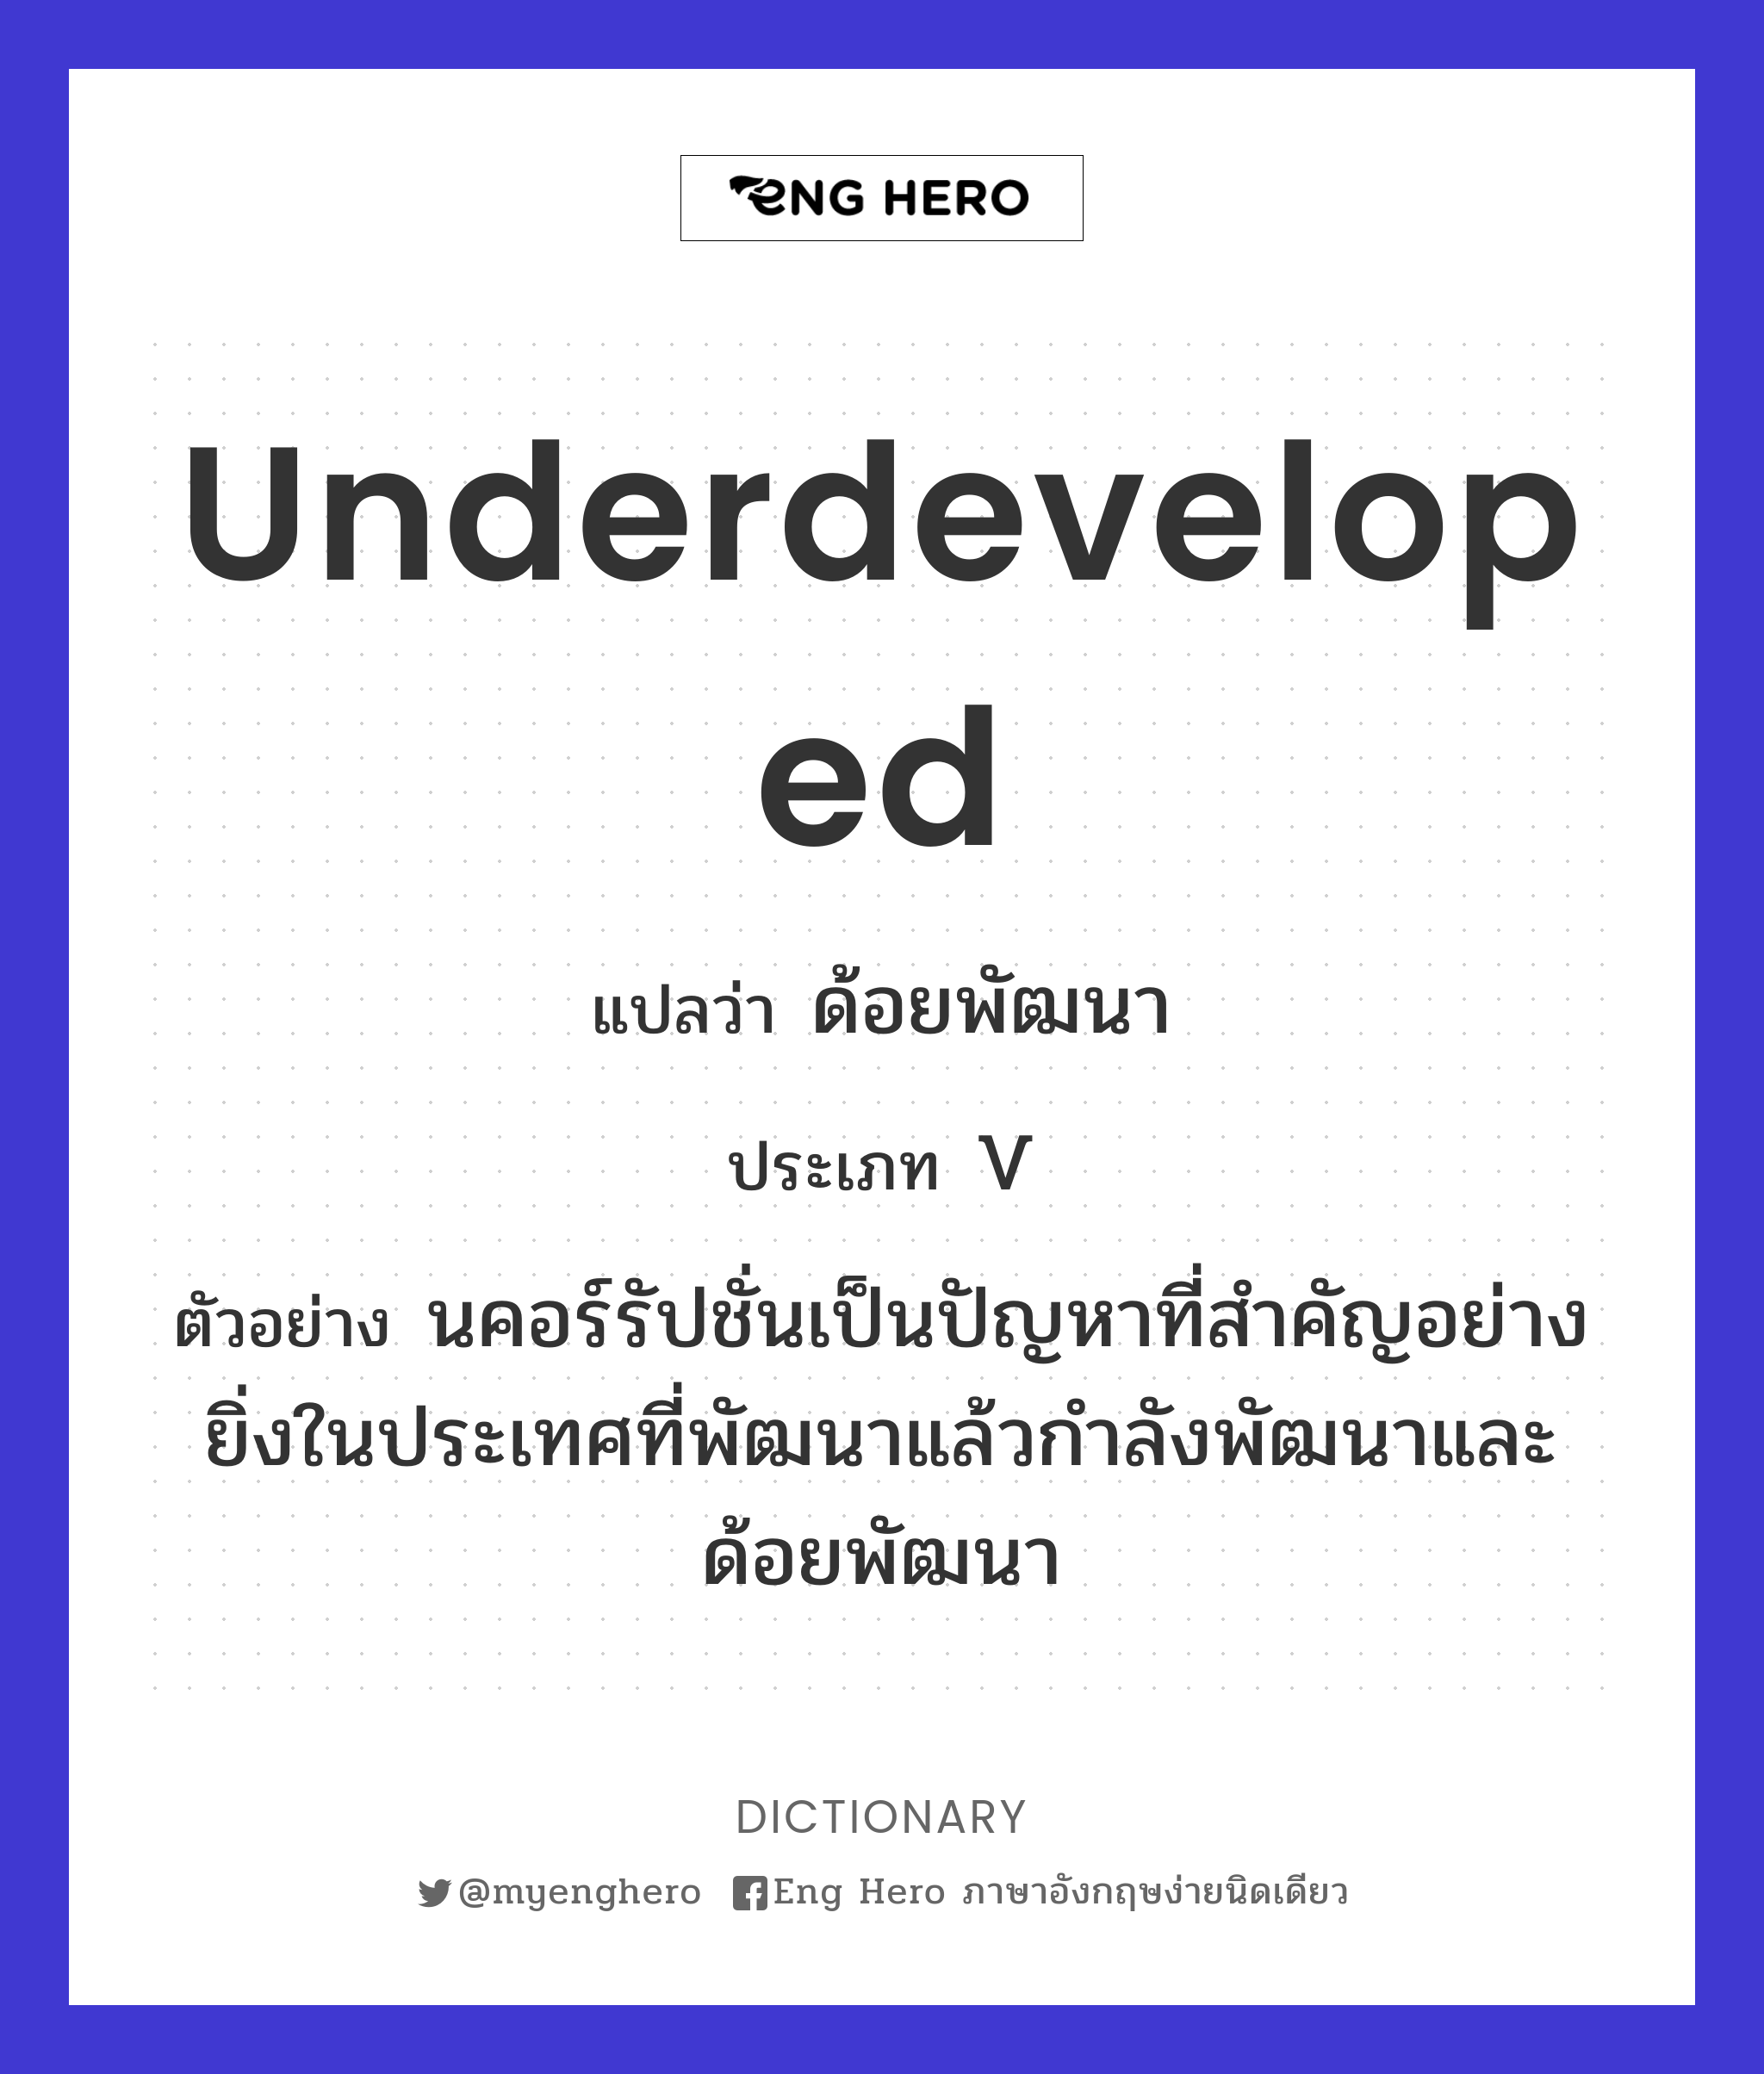 underdeveloped